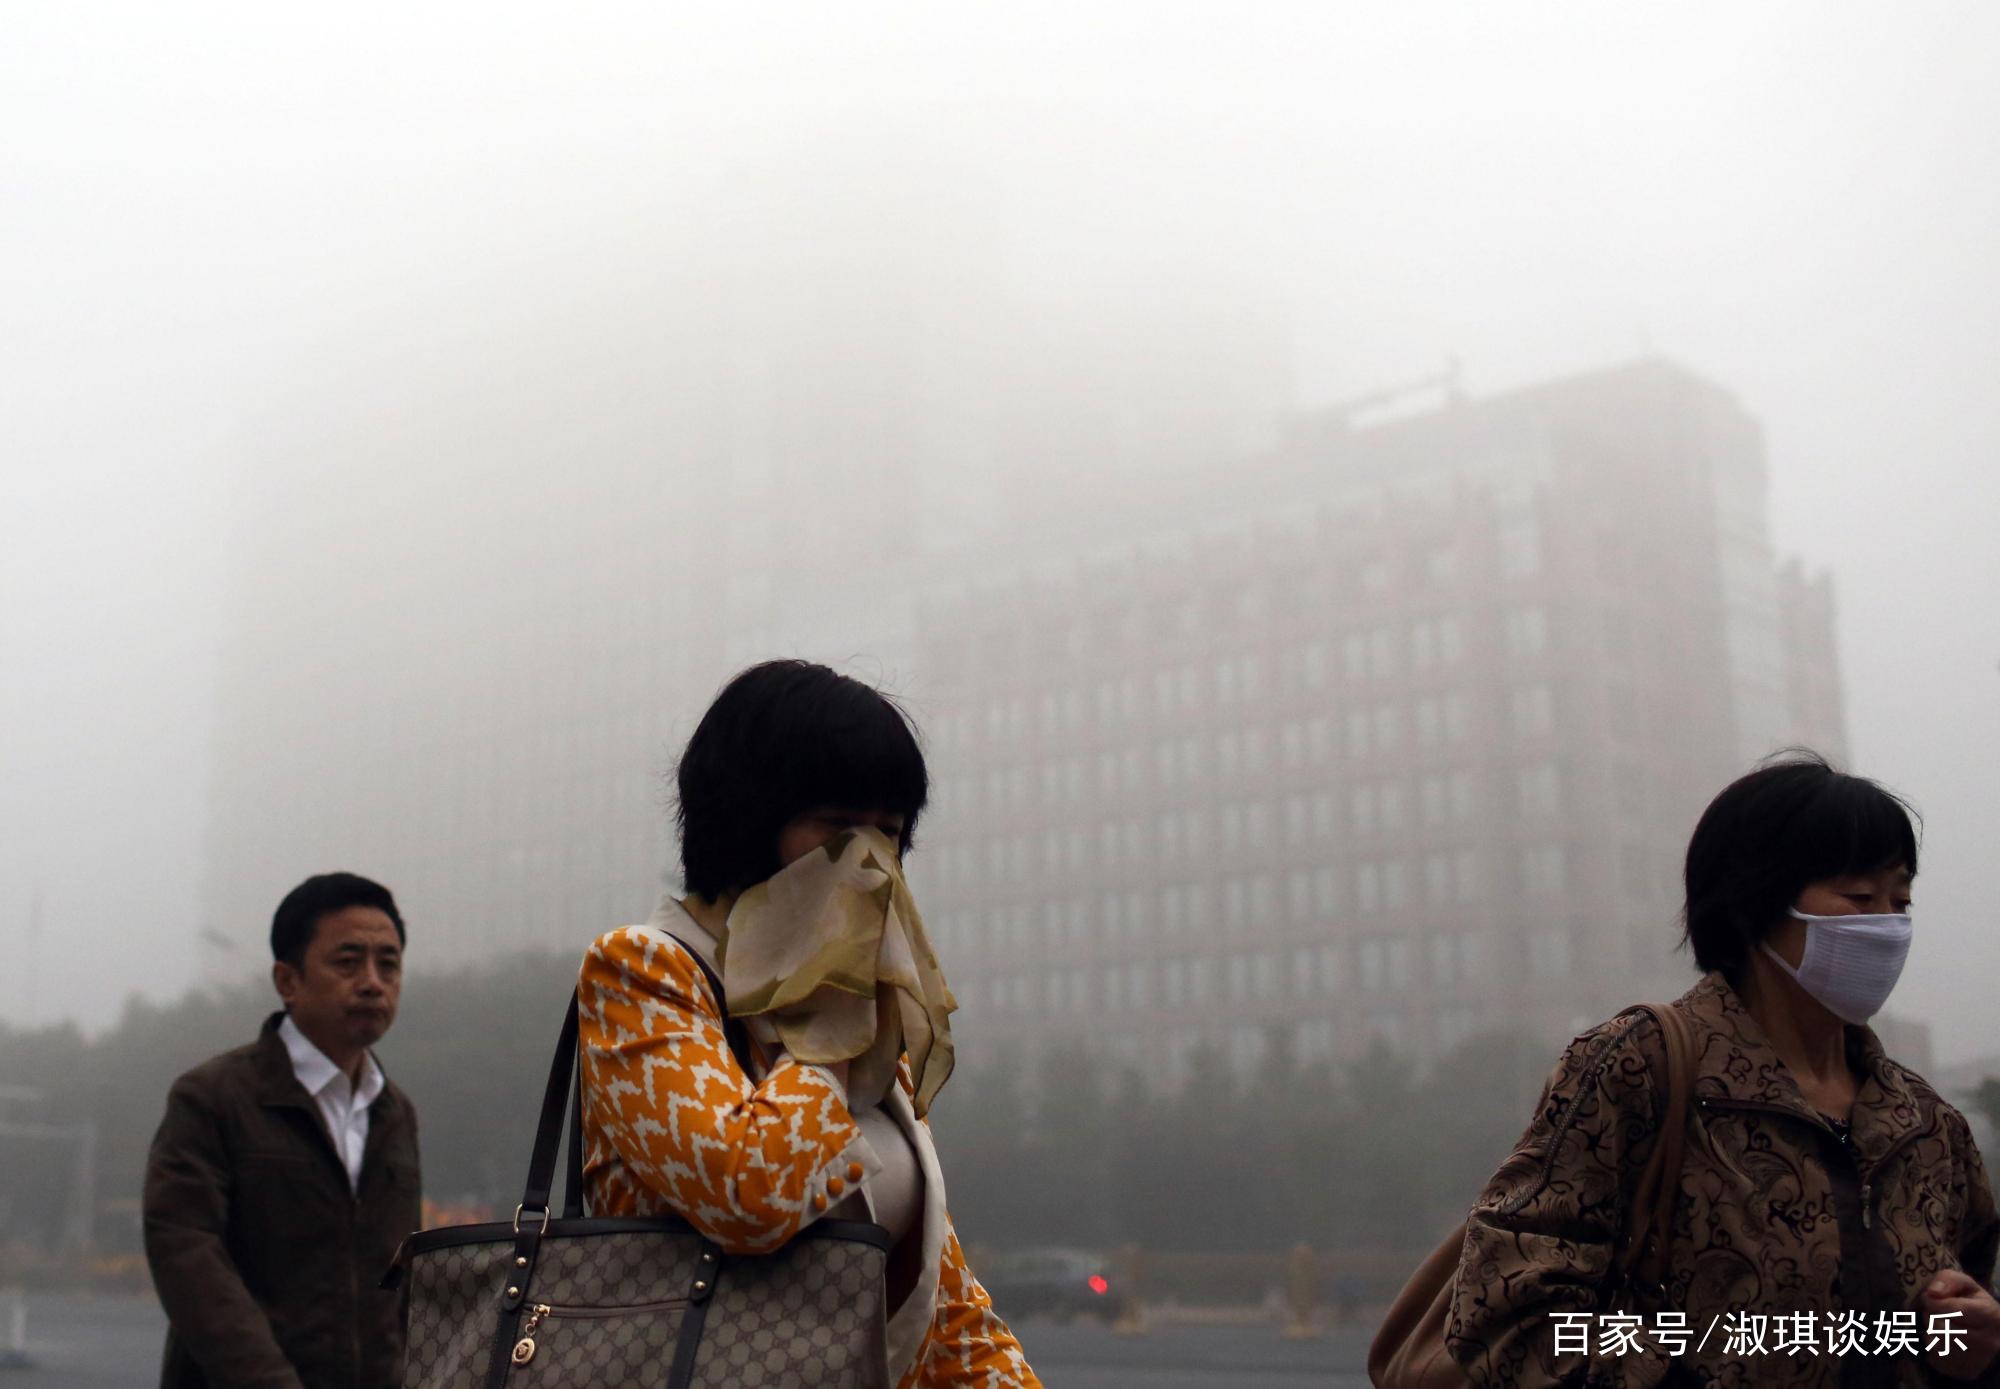 这几年北京雾霾天越来越少了，是怎么治理的呢？